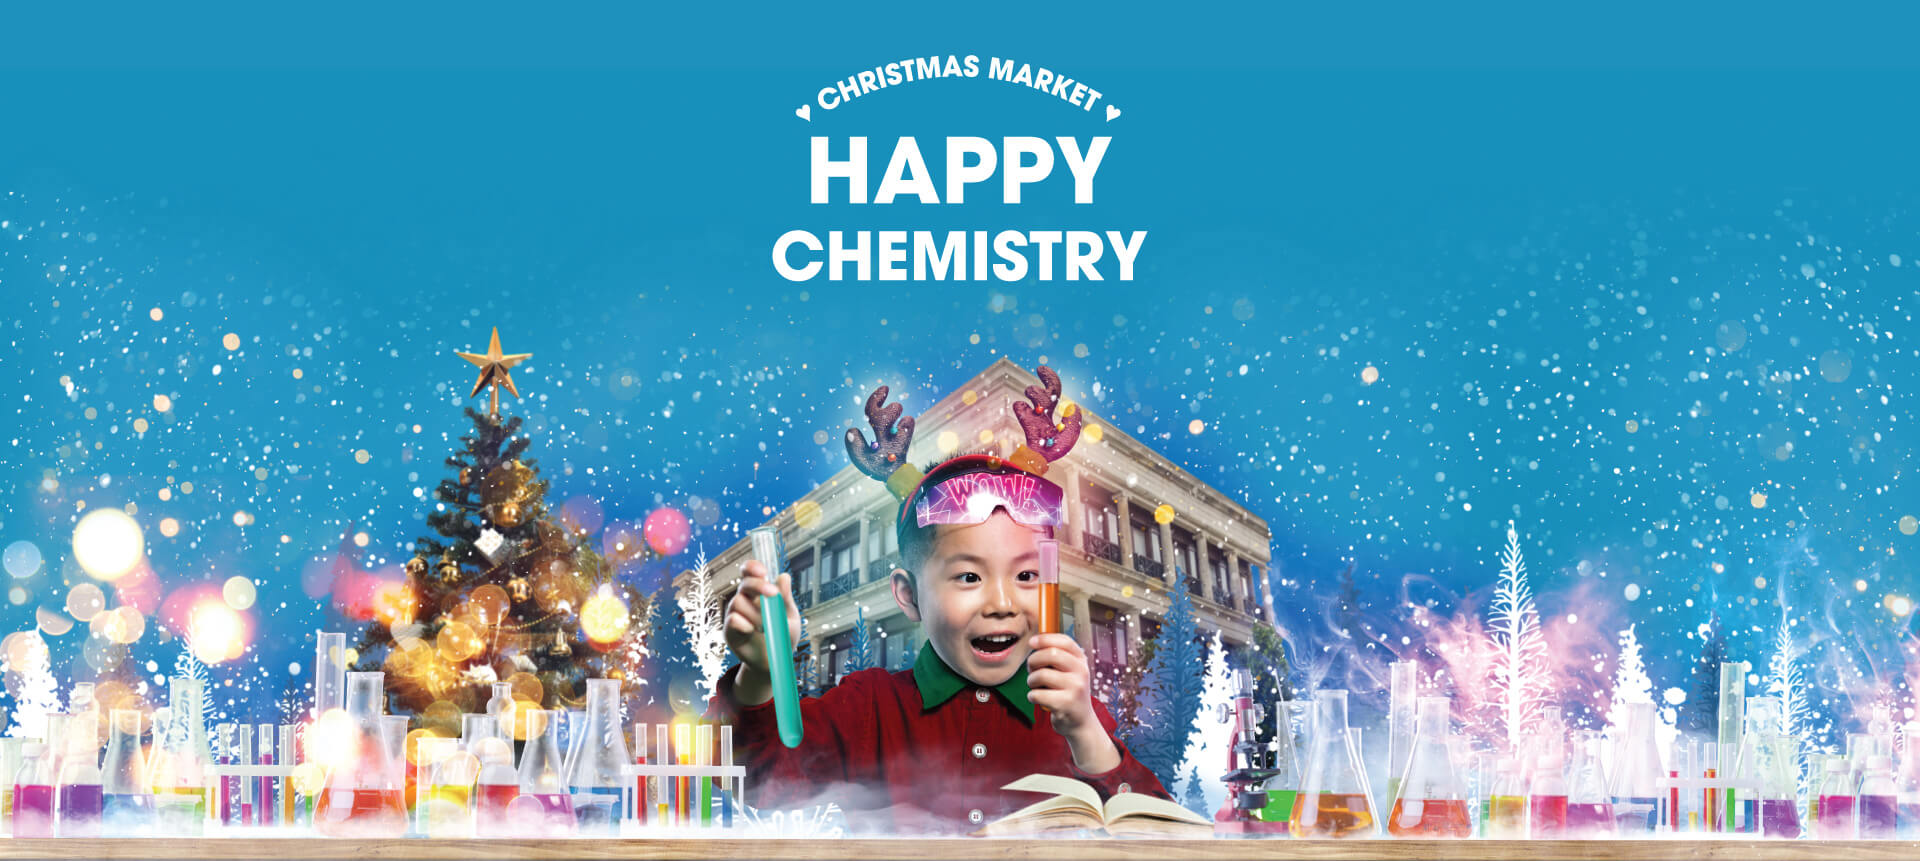 Stanley Plaza - Chrismas Market: Happy Chemistry